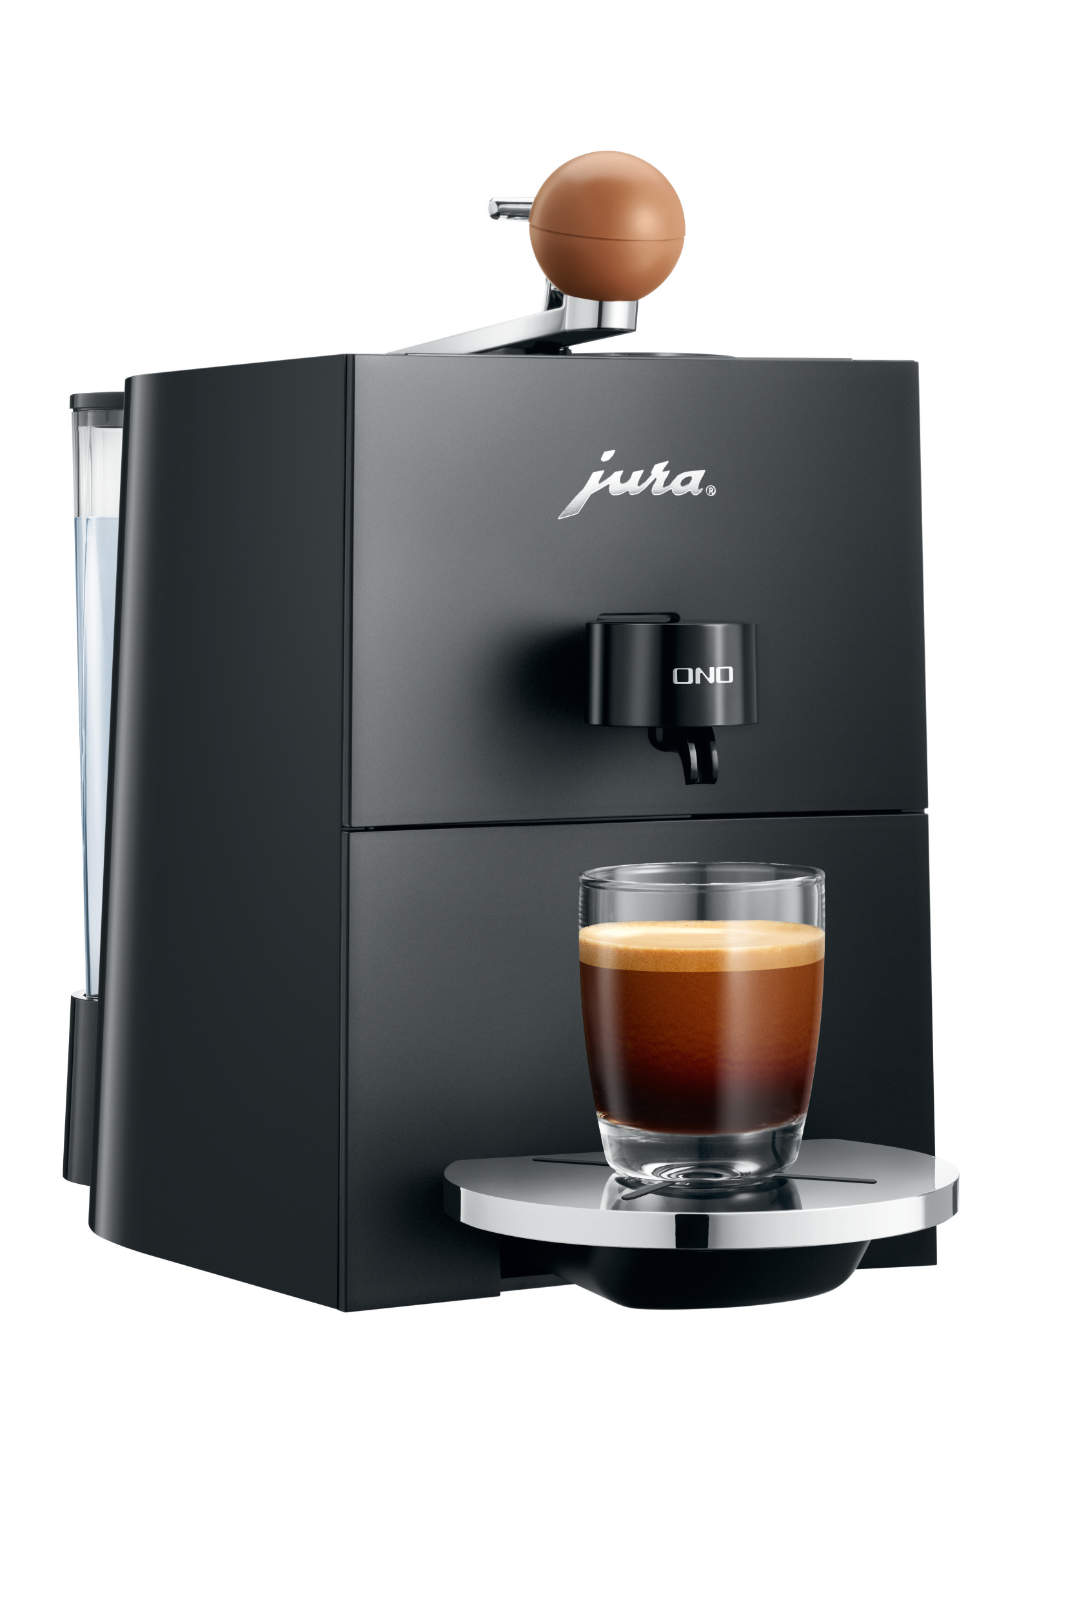 Das Design der Ono zeigt auf den ersten Blick, dass es sich hier um eine außergewöhnliche Konstruktion für Kaffee-Genießer handelt.